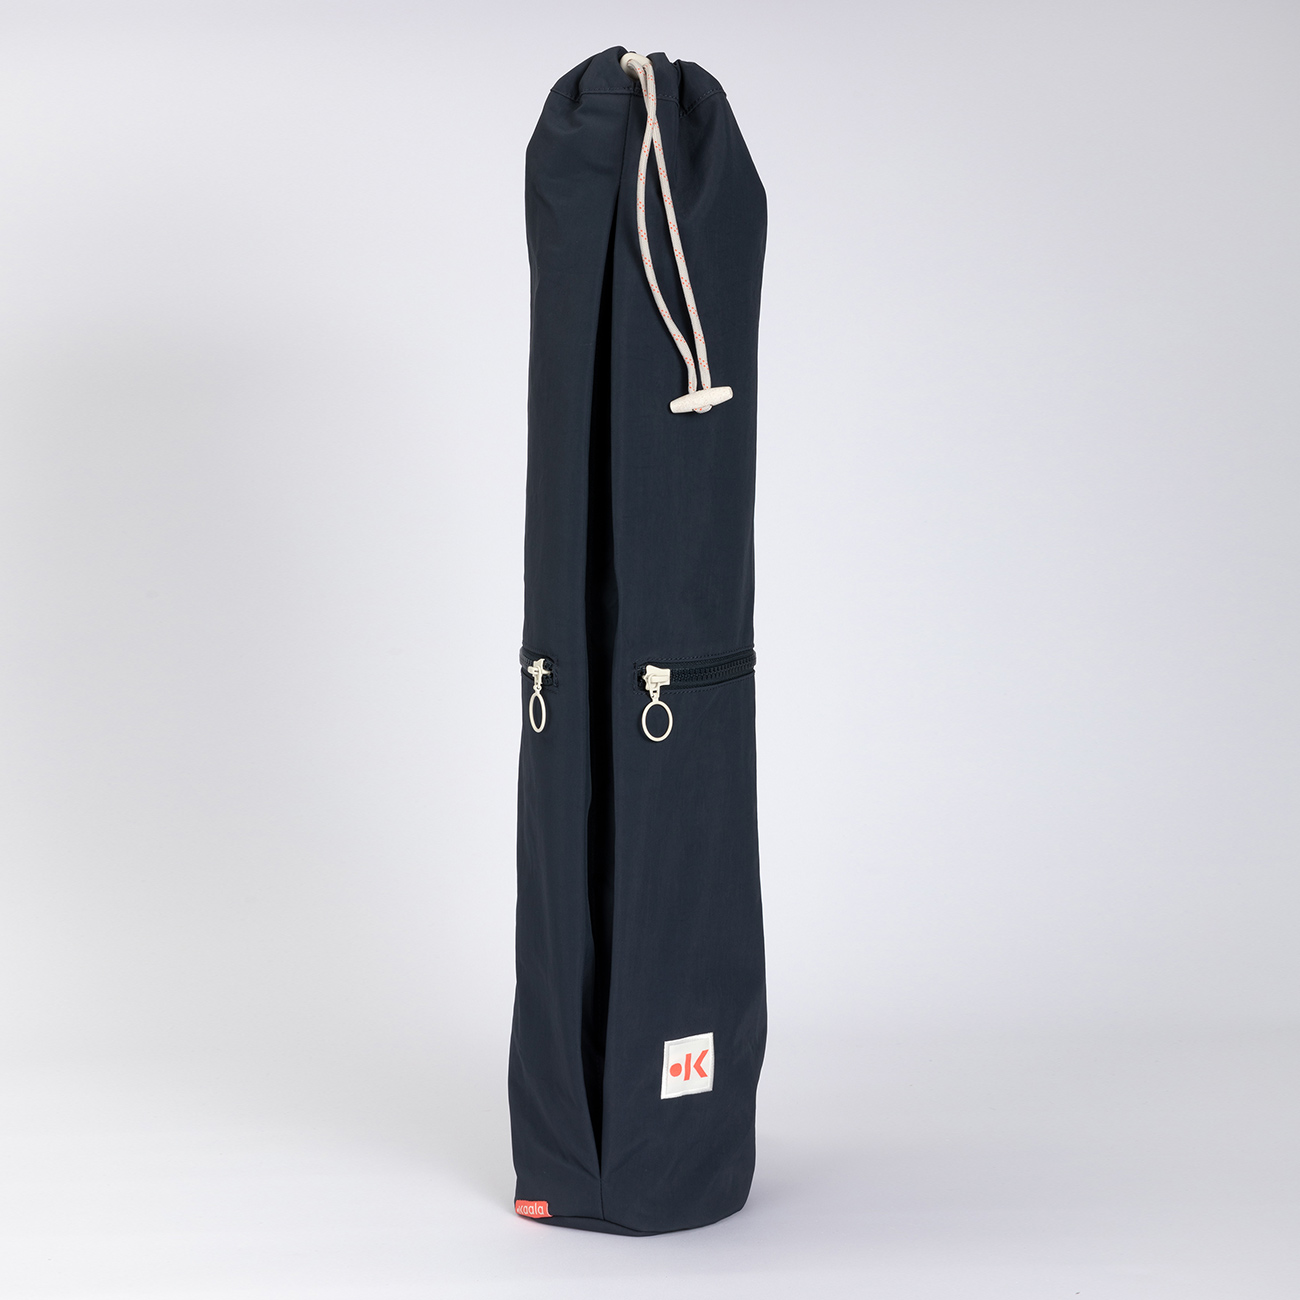 Yoga Mat Bags - Buy Yoga Mat Bags Online Starting at Just ₹140